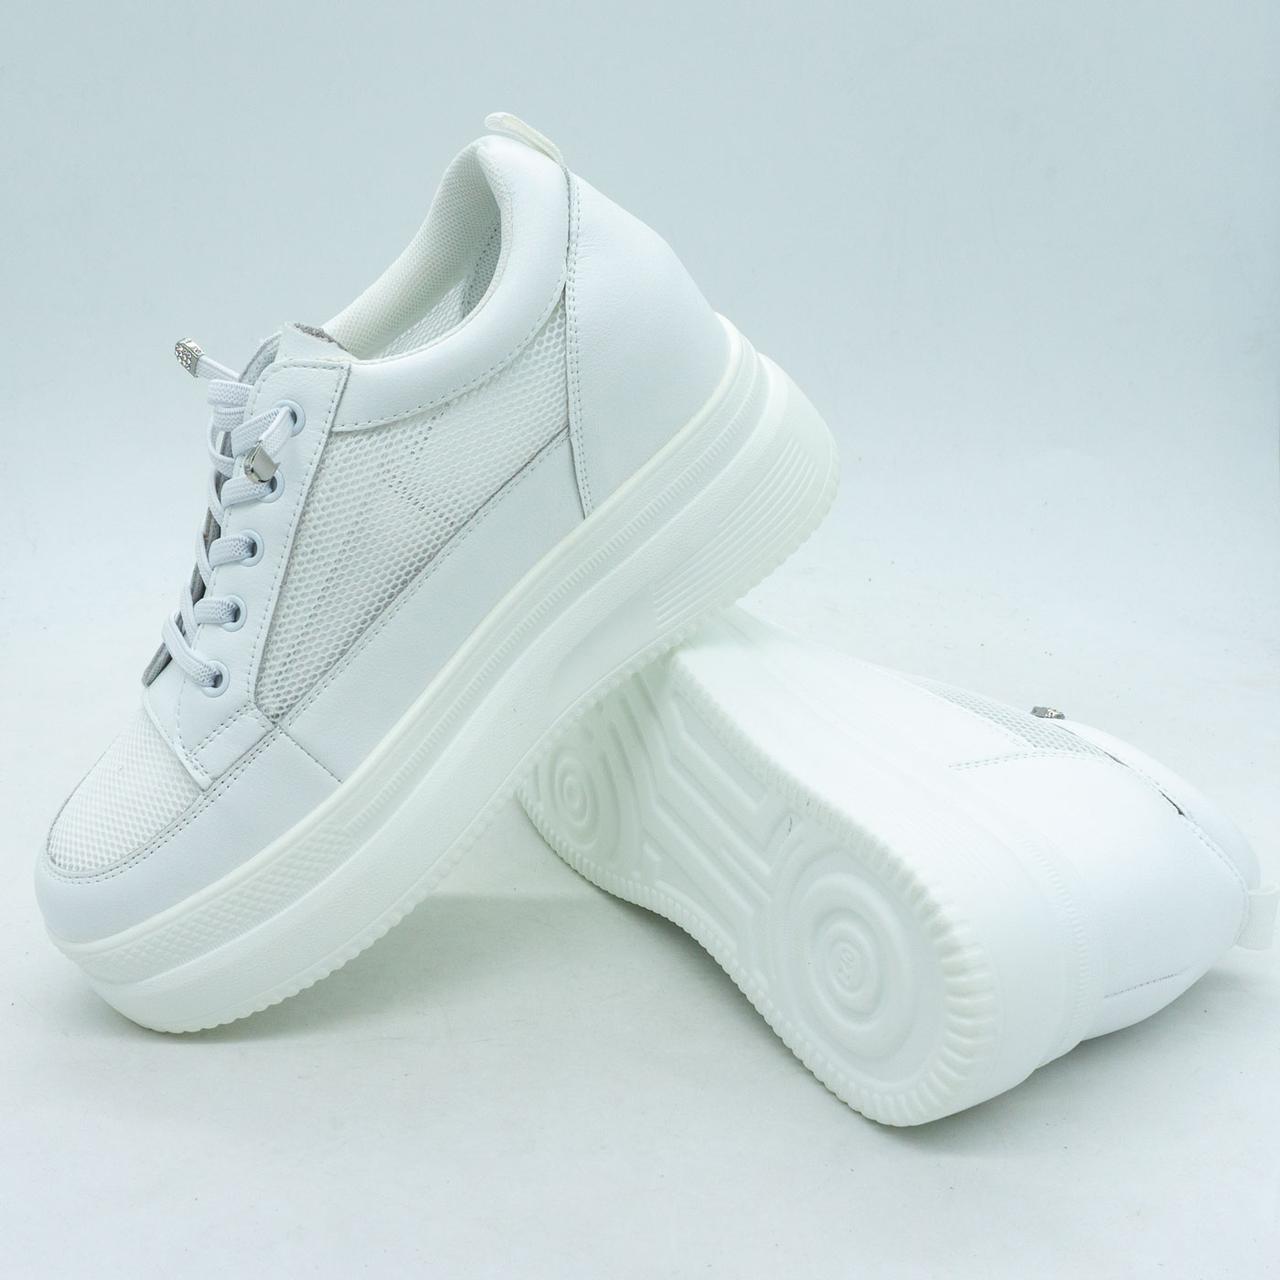 Жіночі шкiрянi кросівки на танкетці Fashion 326-1 білі 35. Розміри в наявності: 35, 36, 37, 38, 39.